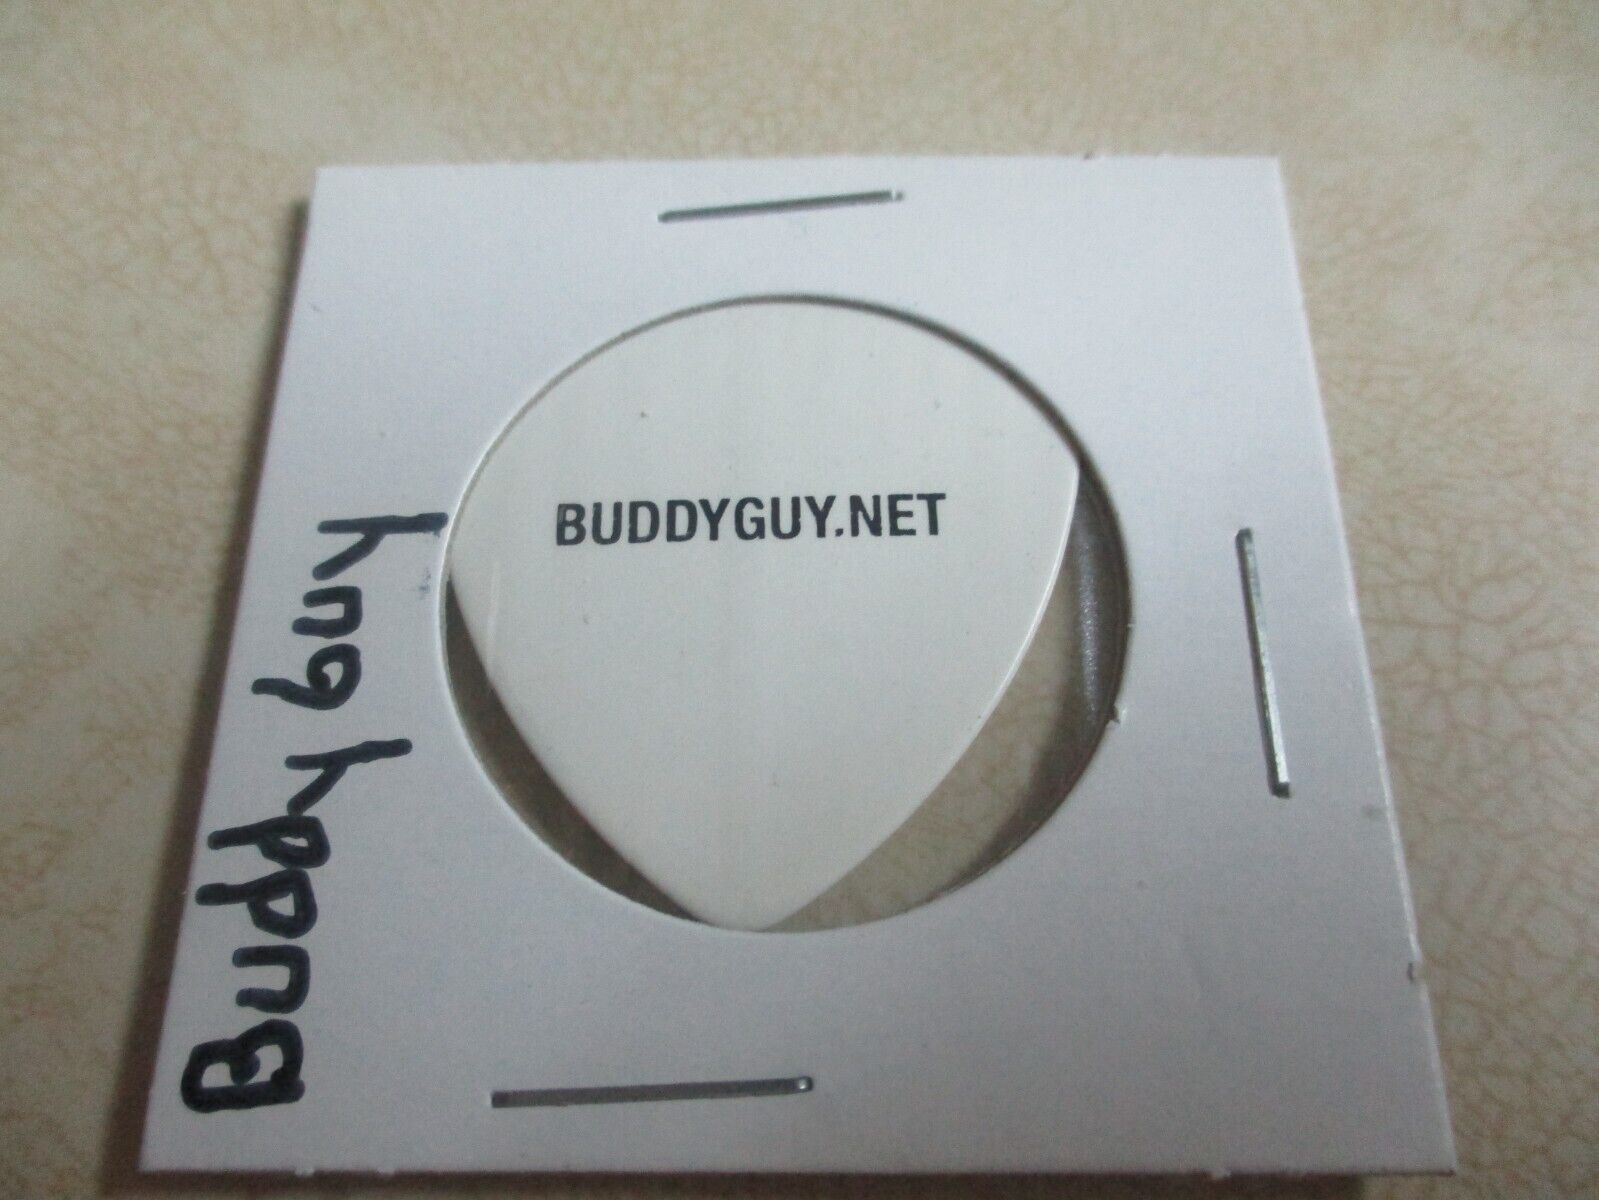 Buddy Guy  Buddyguy.net Guitar Pick